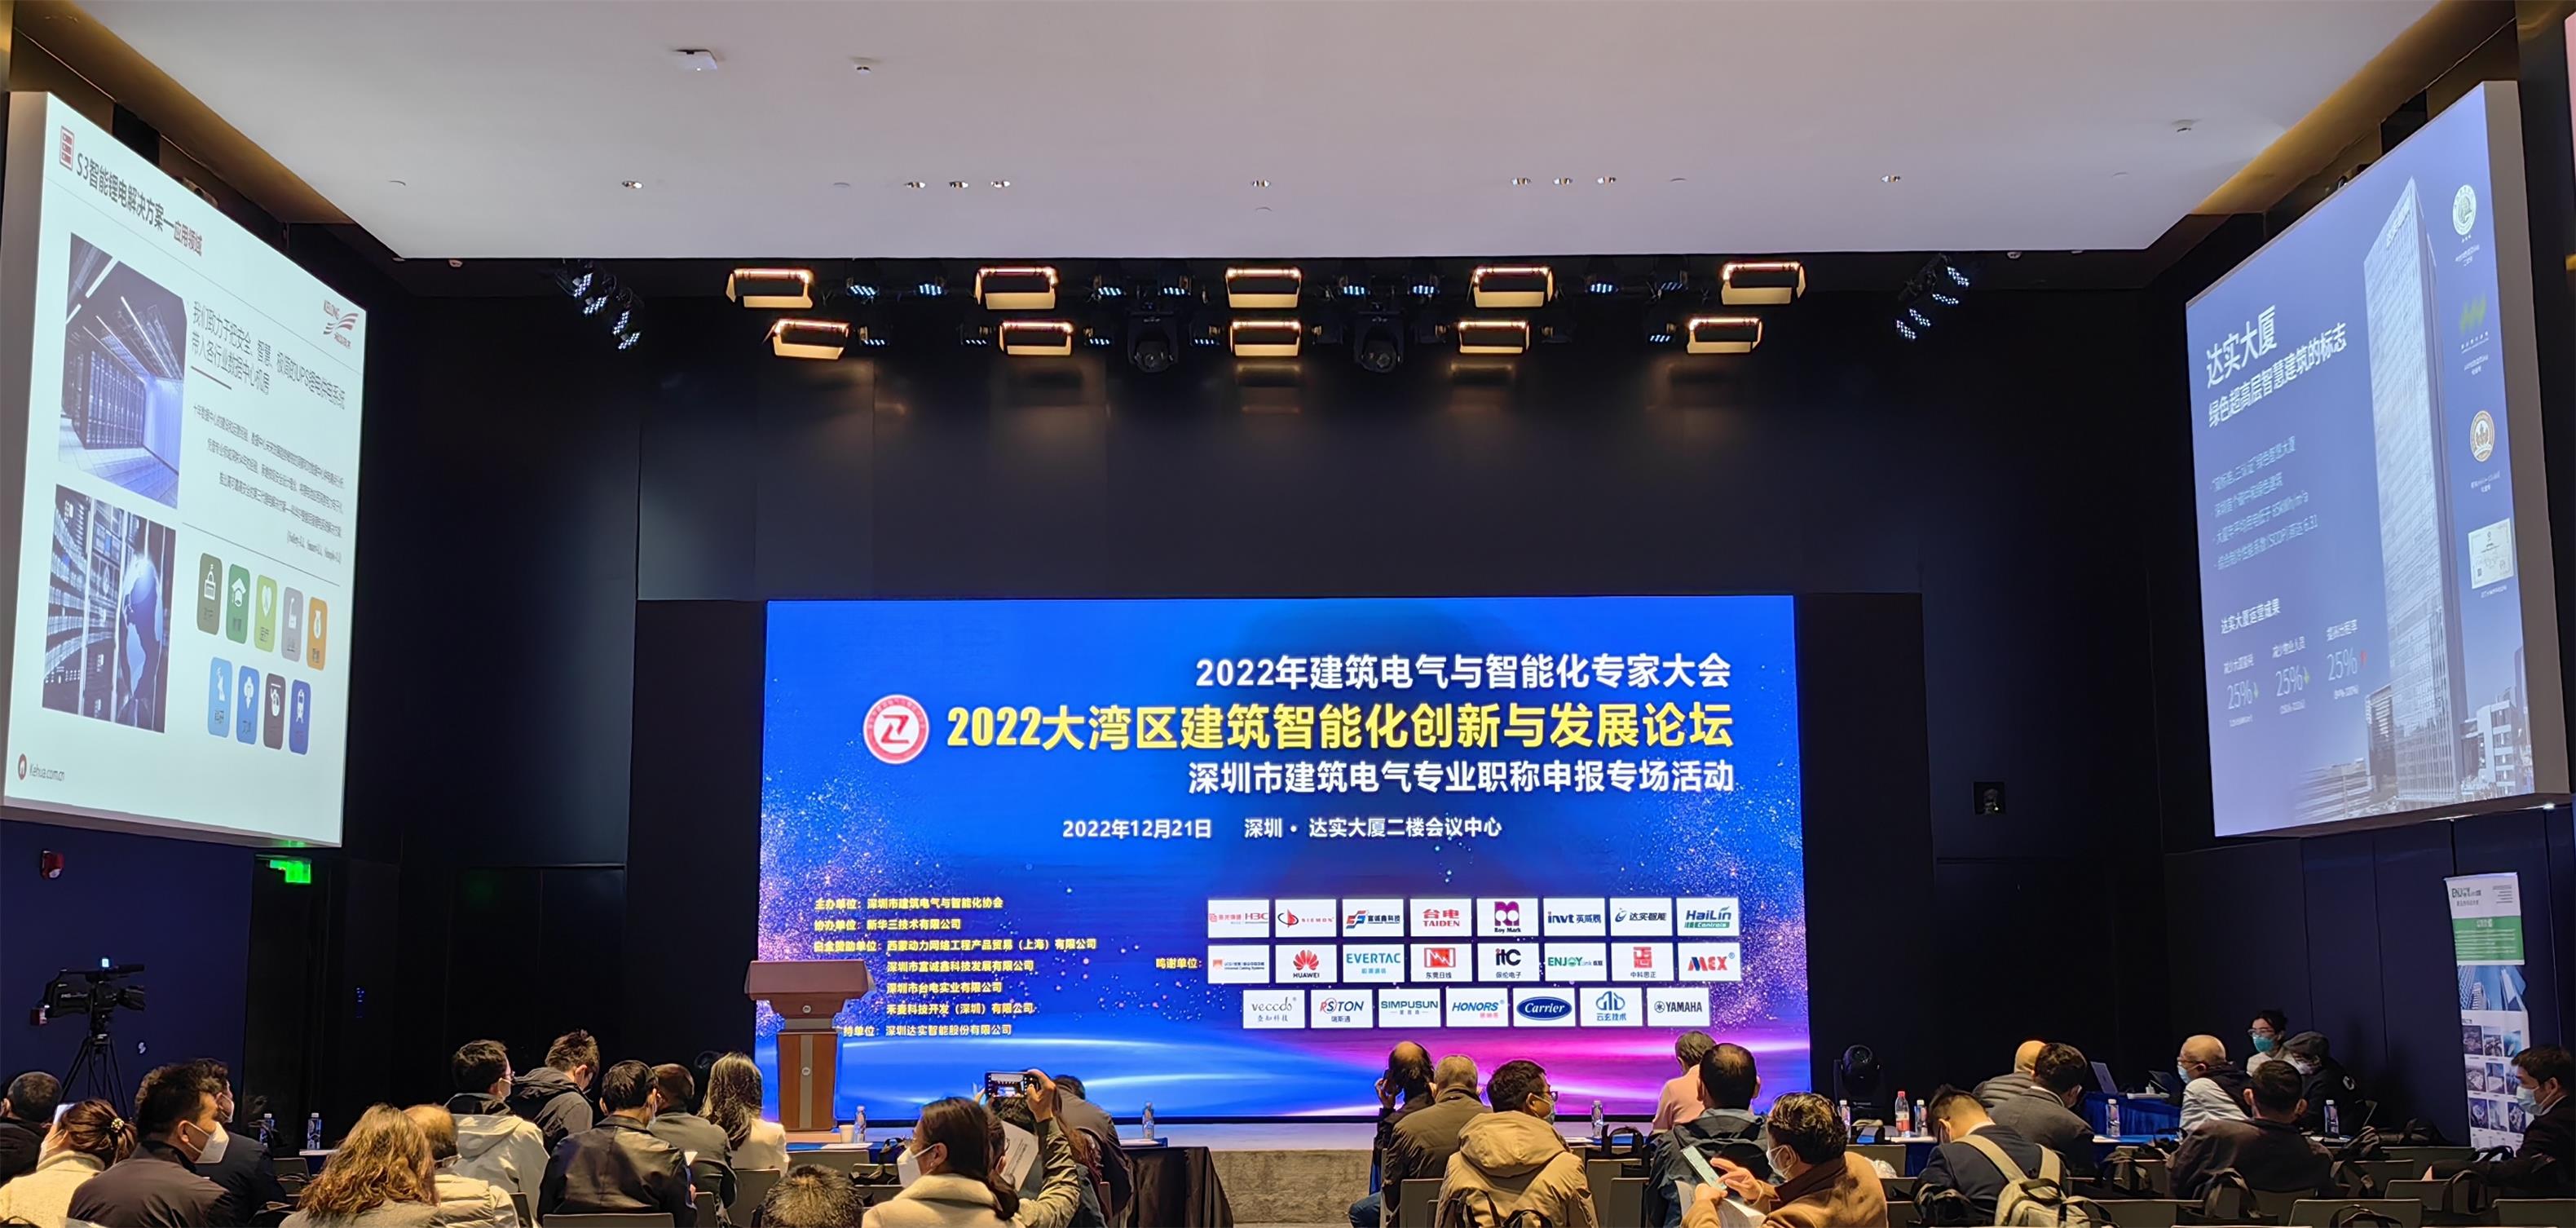 快讯 | 达实亮相2022华南建筑智能化创新与发展论坛